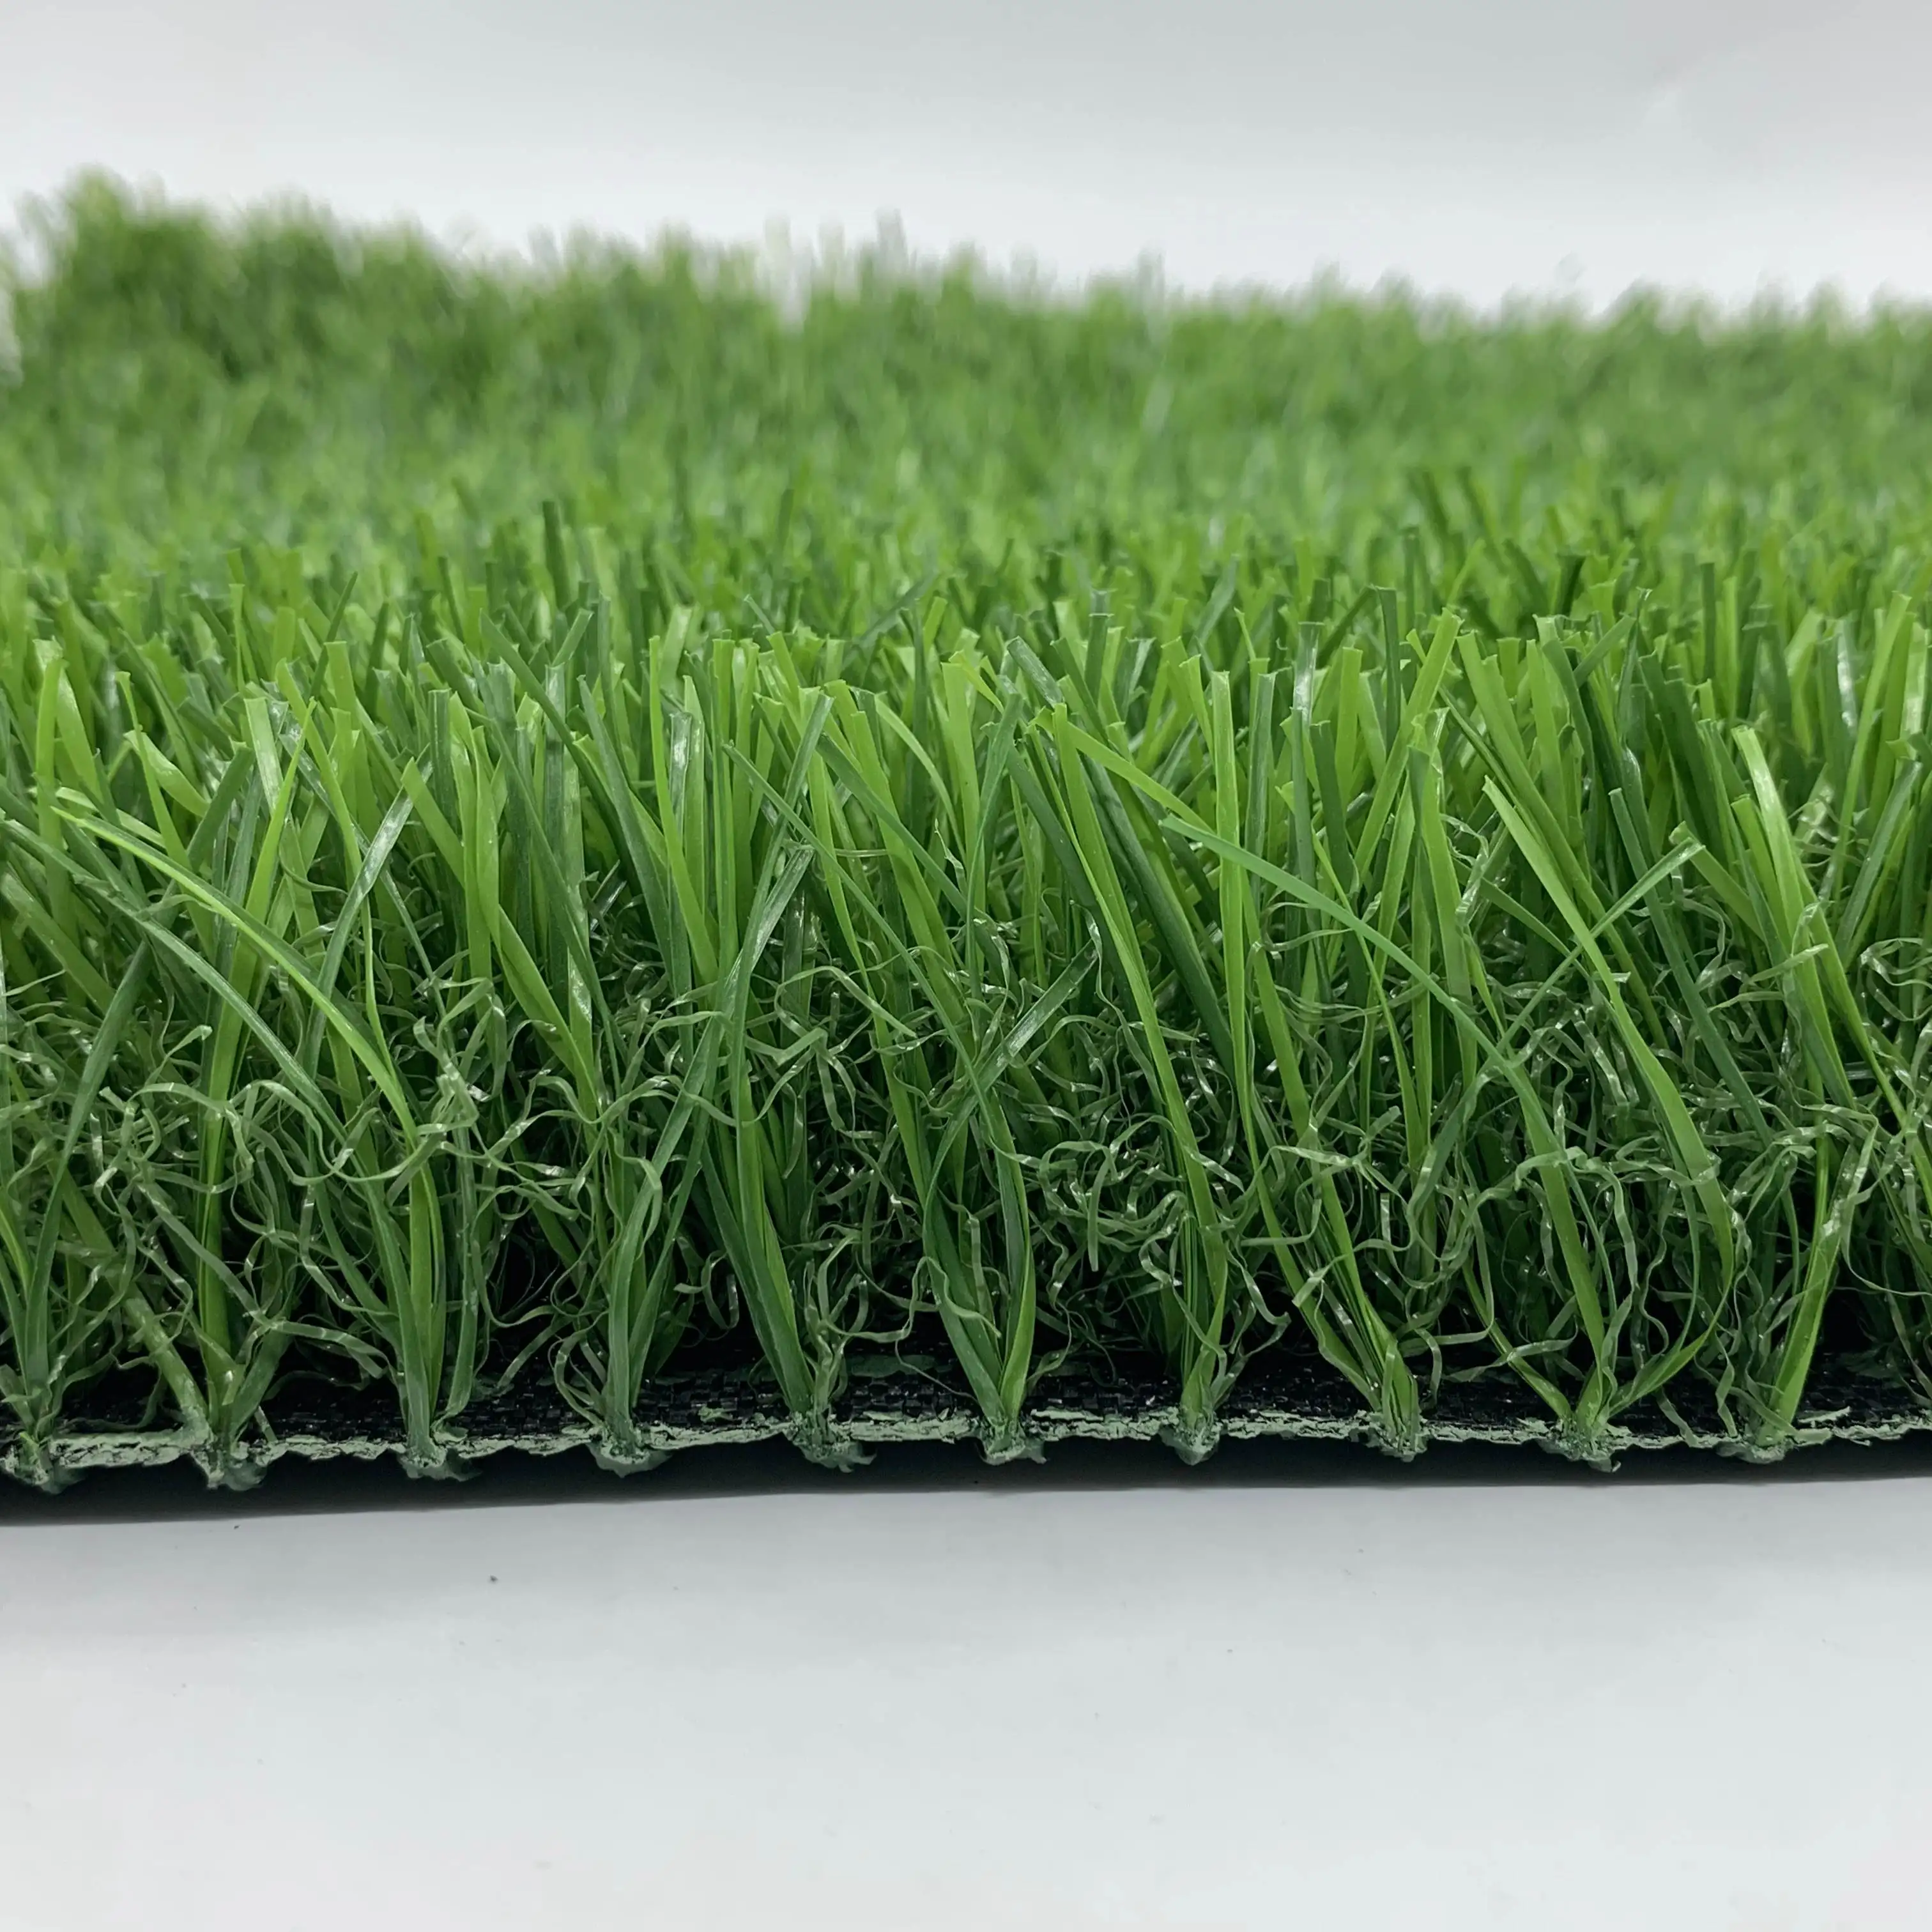 YC-AG02 grama verde artificial adequada para campo de golfe, sintética lazer gramado de alta qualidade